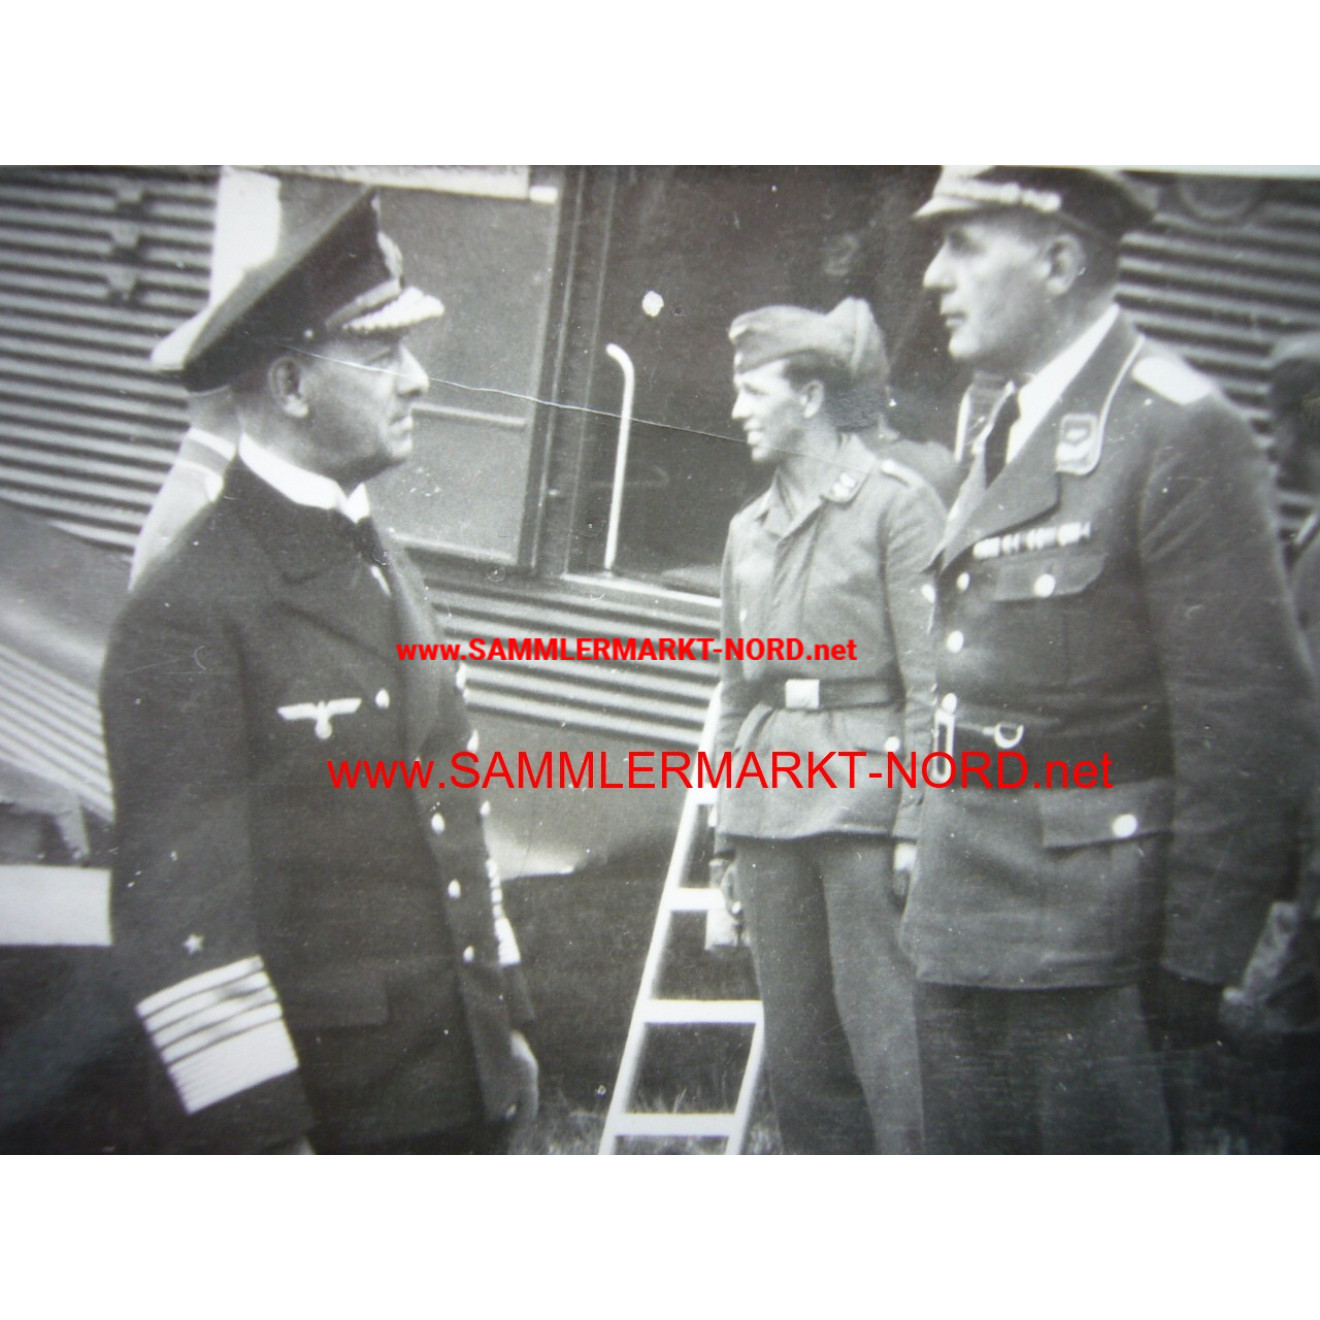 Grand Admiral Erich Raeder and Oberleutnant von Ehrenfeld at the